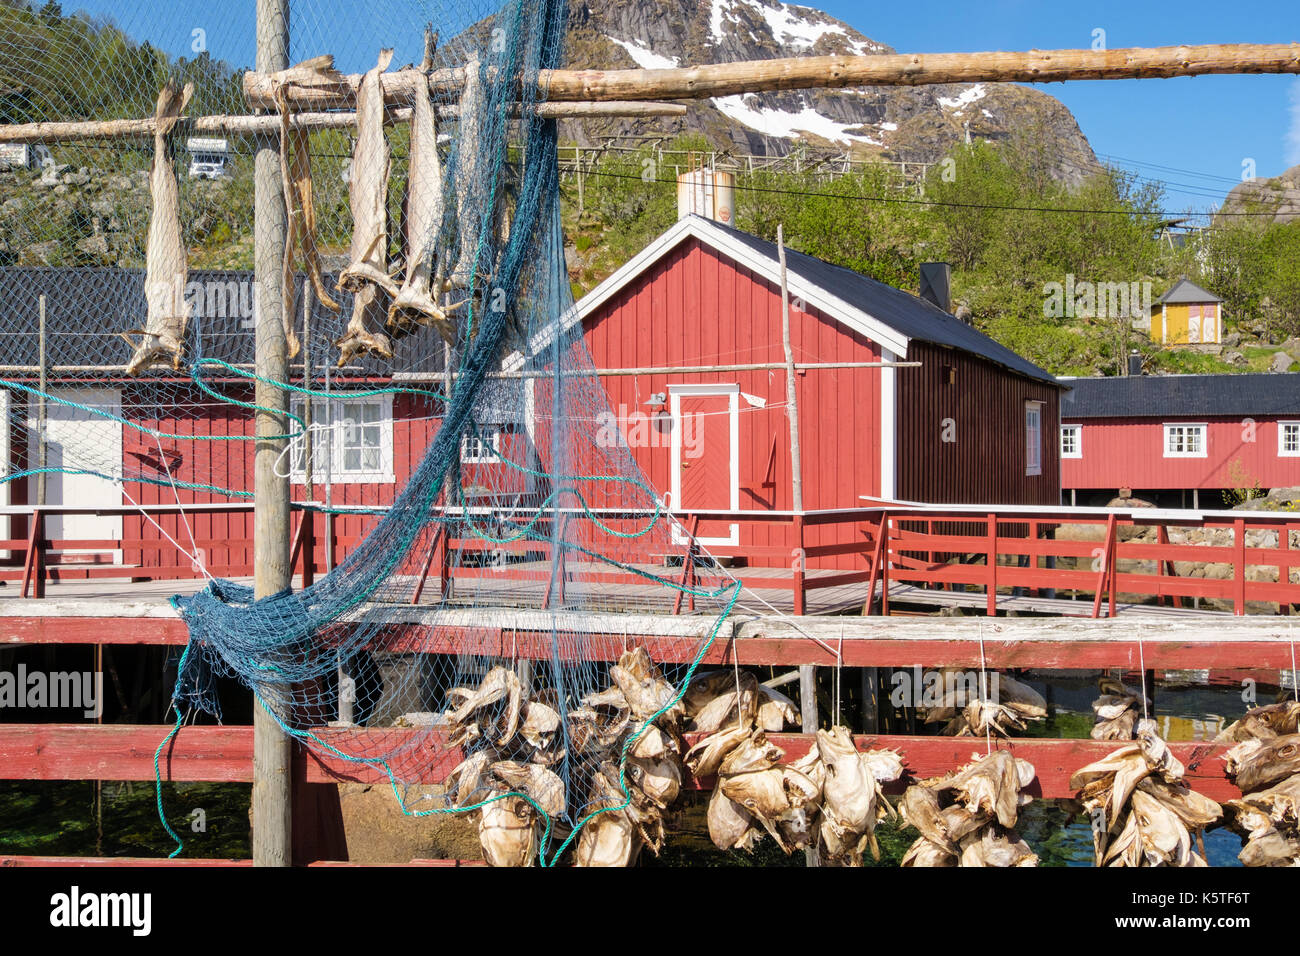 Stockfisch fisch Kopf und Netze Aufhängen im historischen Fischerdorf Nusfjord, Insel Flakstadøya, Lofoten, Nordland, Norwegen zu trocknen Stockfoto